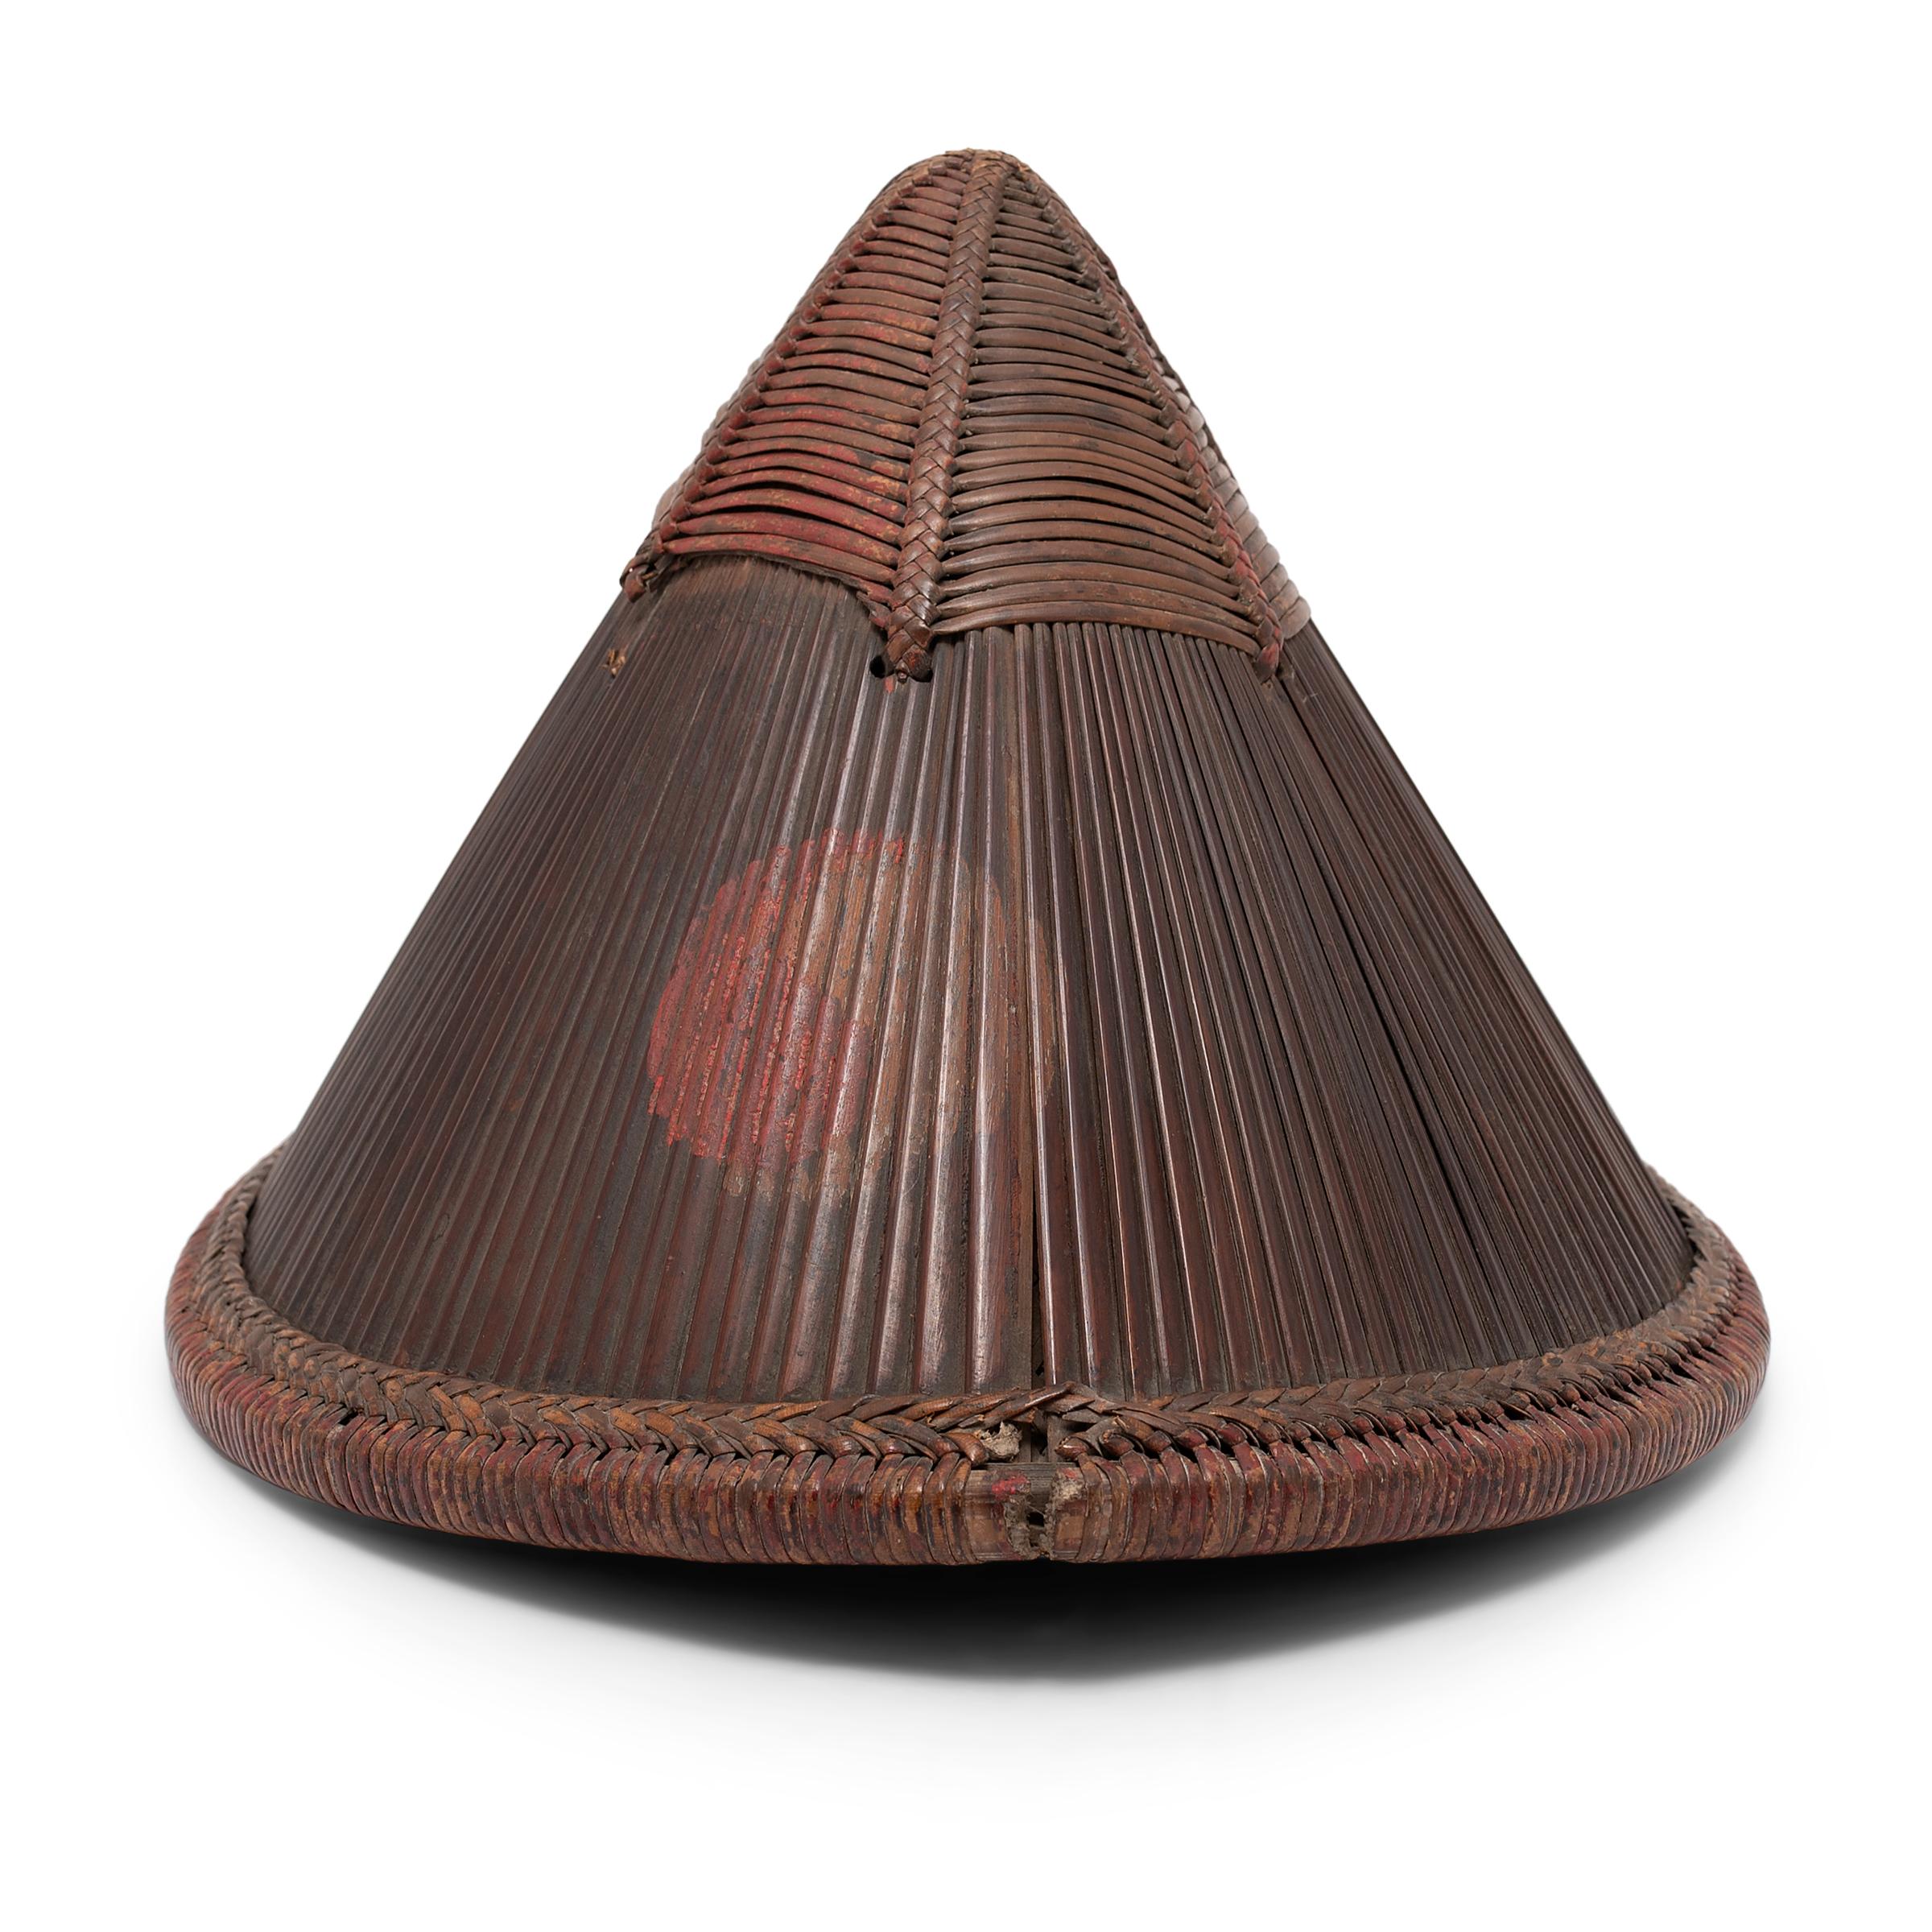 Dieser konische, geflochtene Hut stammt aus dem China des 19. Jahrhunderts und wird fachmännisch ganz aus Bambus gefertigt. Die Außenseite besteht aus mit Rattanstreifen geflochtenen Bambussplittern, die durch eine Innenauskleidung mit einem